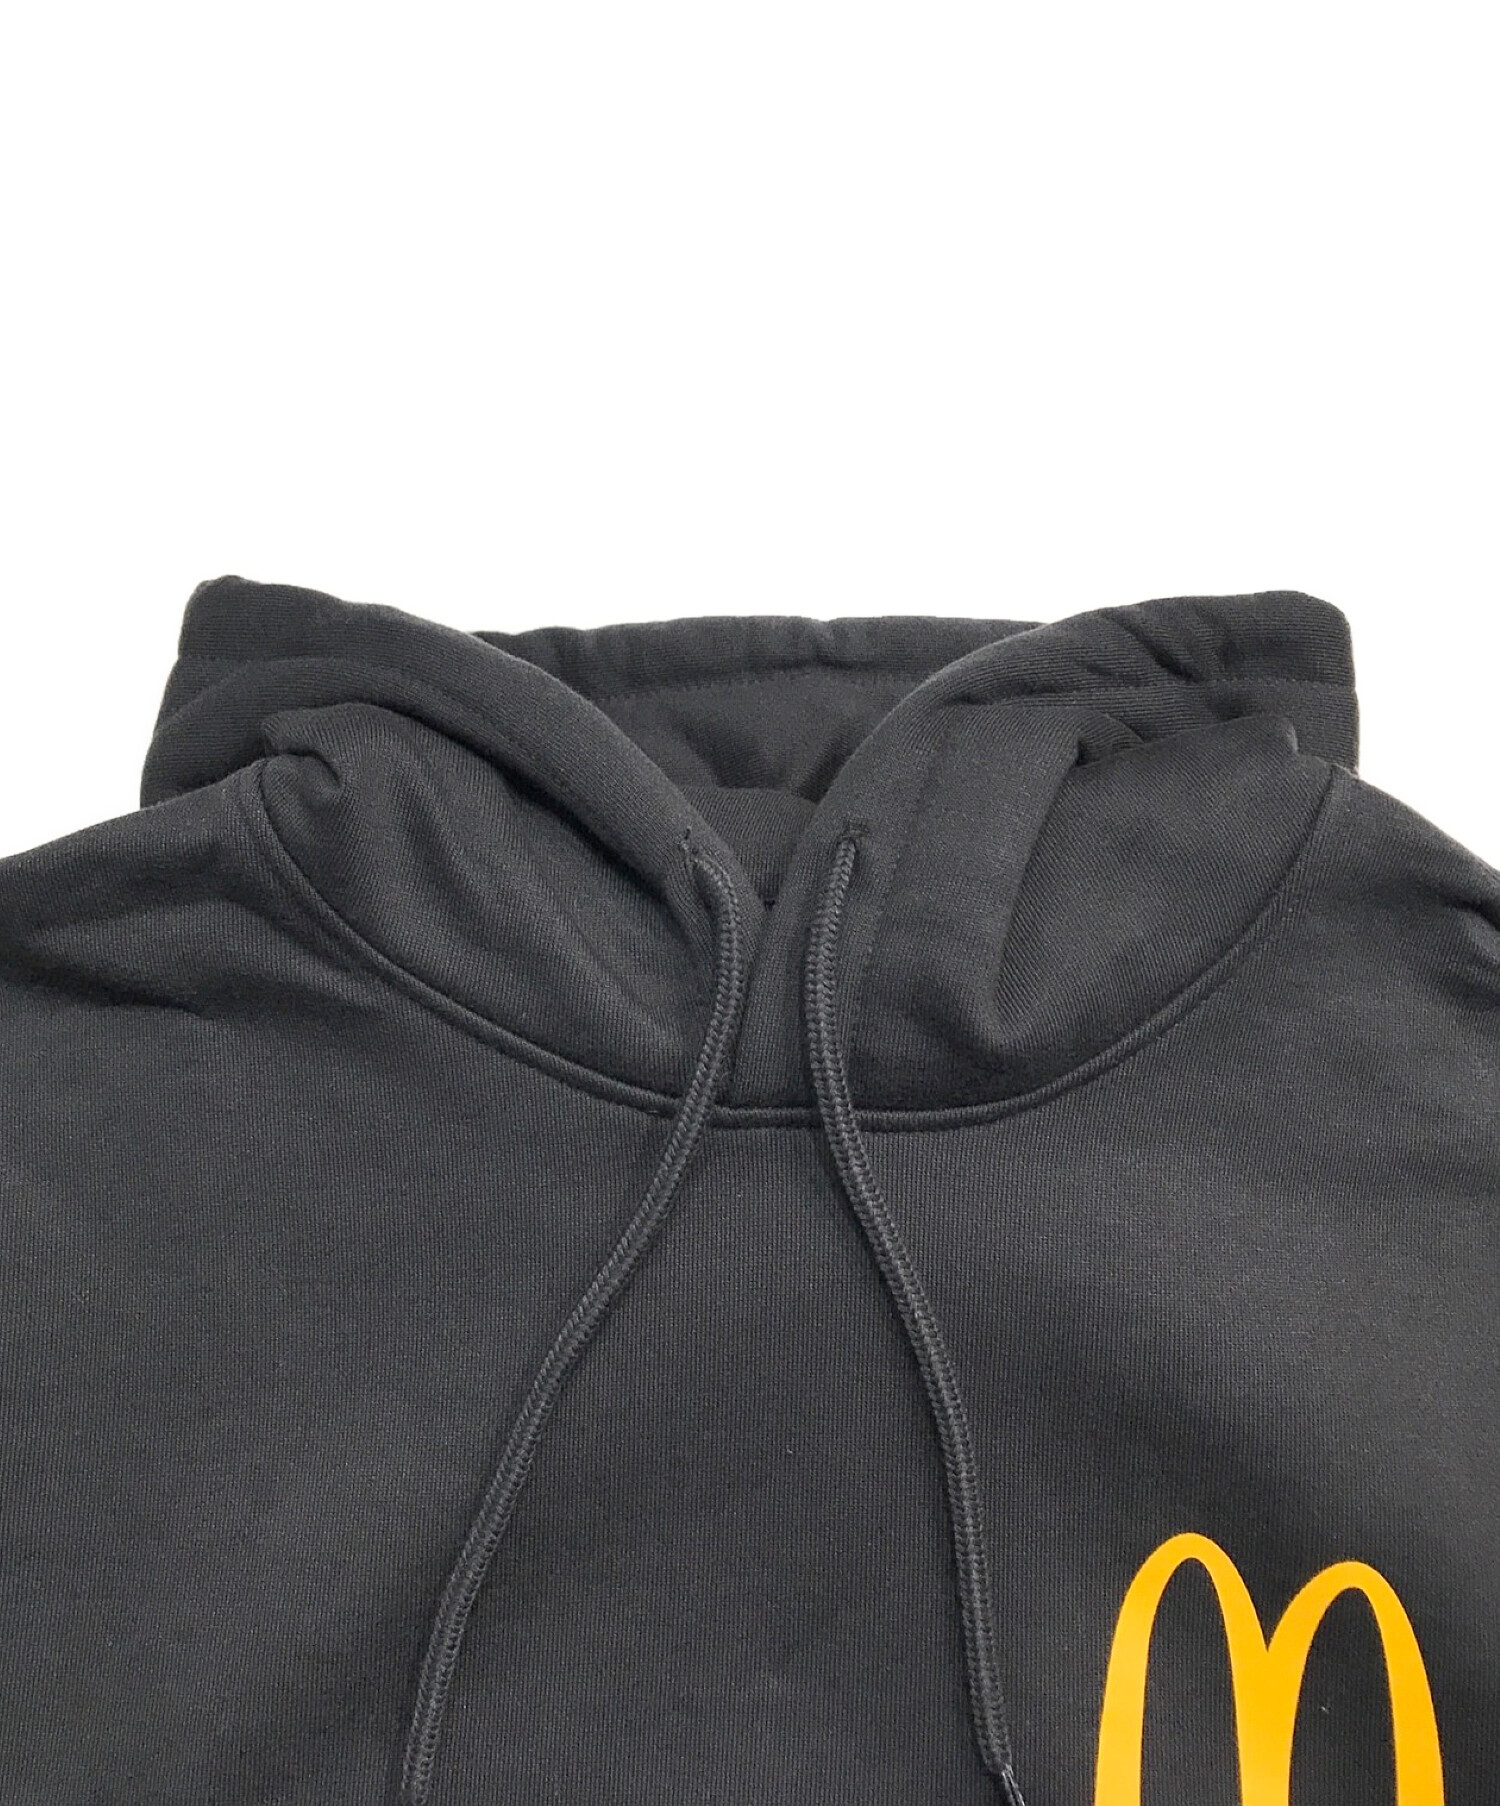 中古・古着通販】PALACE (パレス) McDonald's (マクドナルド) ロゴ